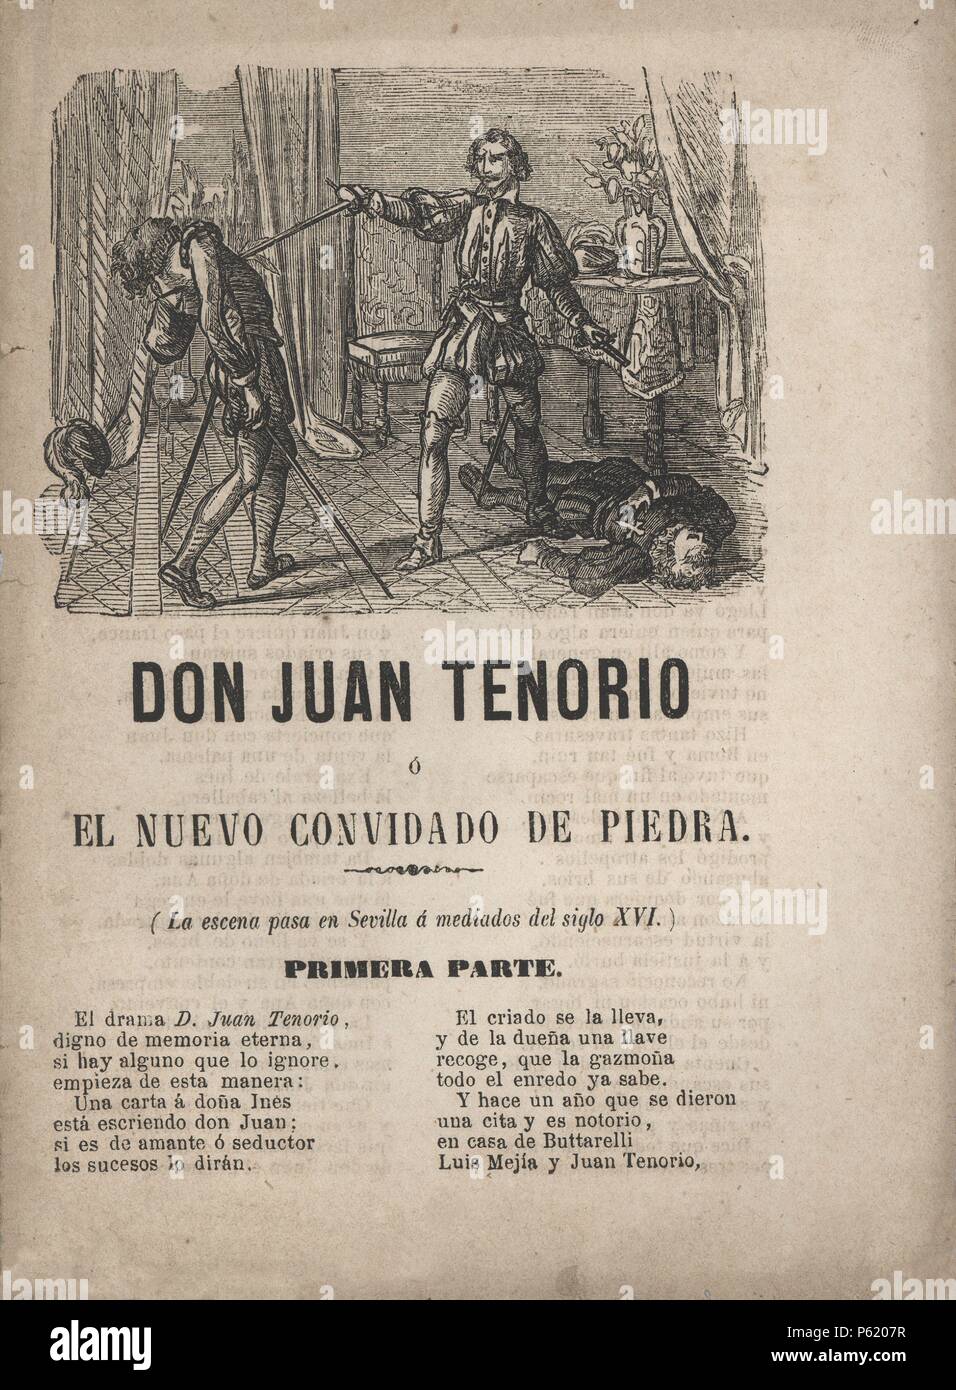 Don Juan Tenorio, drama de José Zorrilla. Literatura de cordel. Argumento publicado en Barcelona, 1895. Stock Photo